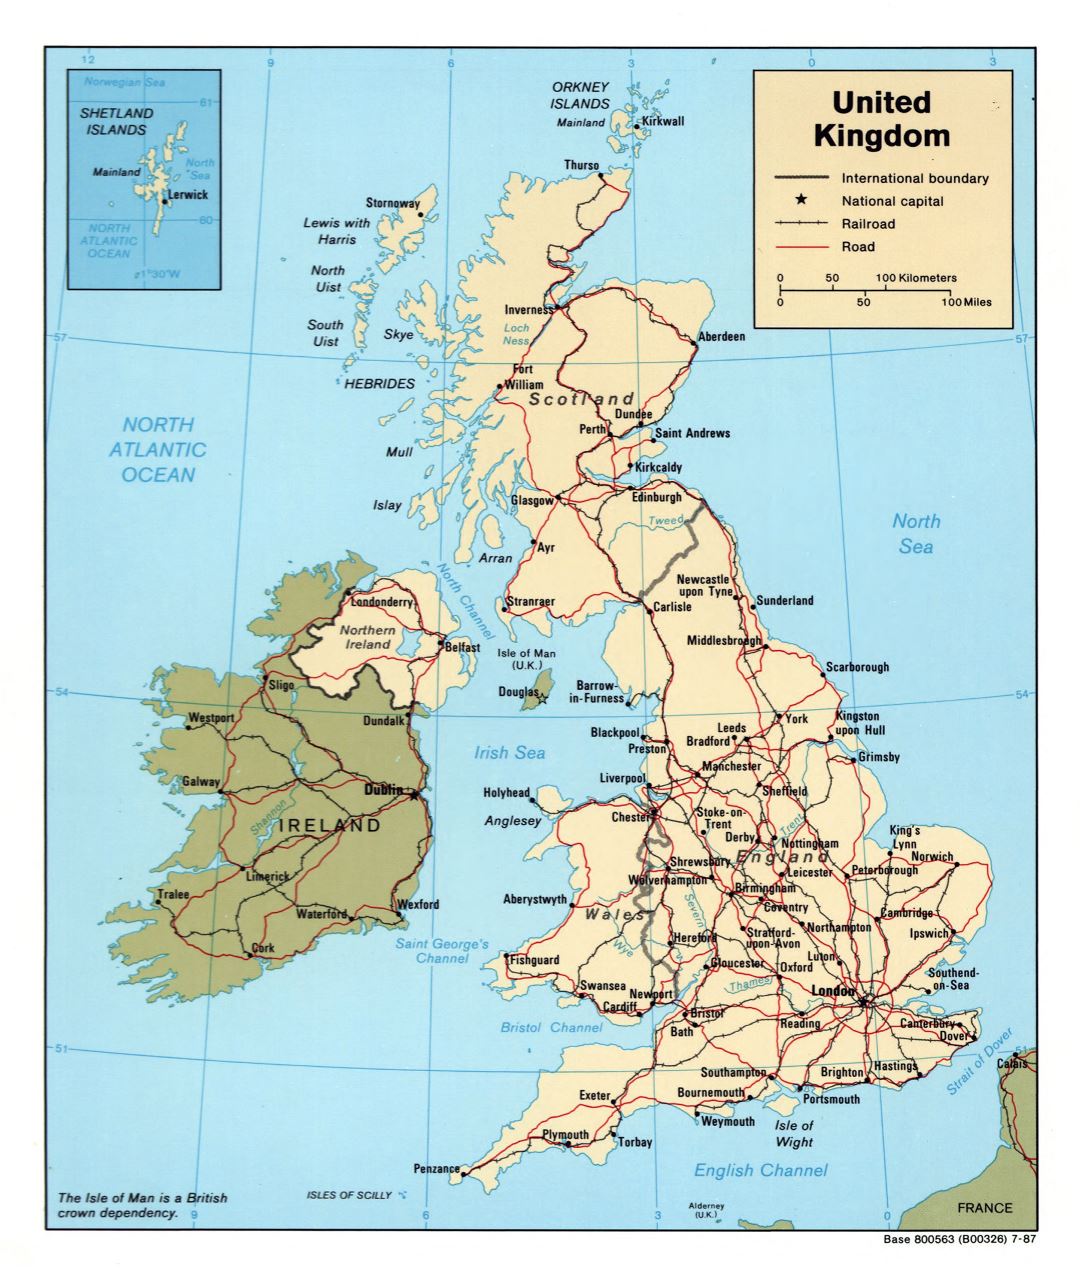 Grande detallado mapa político del Reino Unido con carreteras, ferrocarriles y ciudades principales - 1987